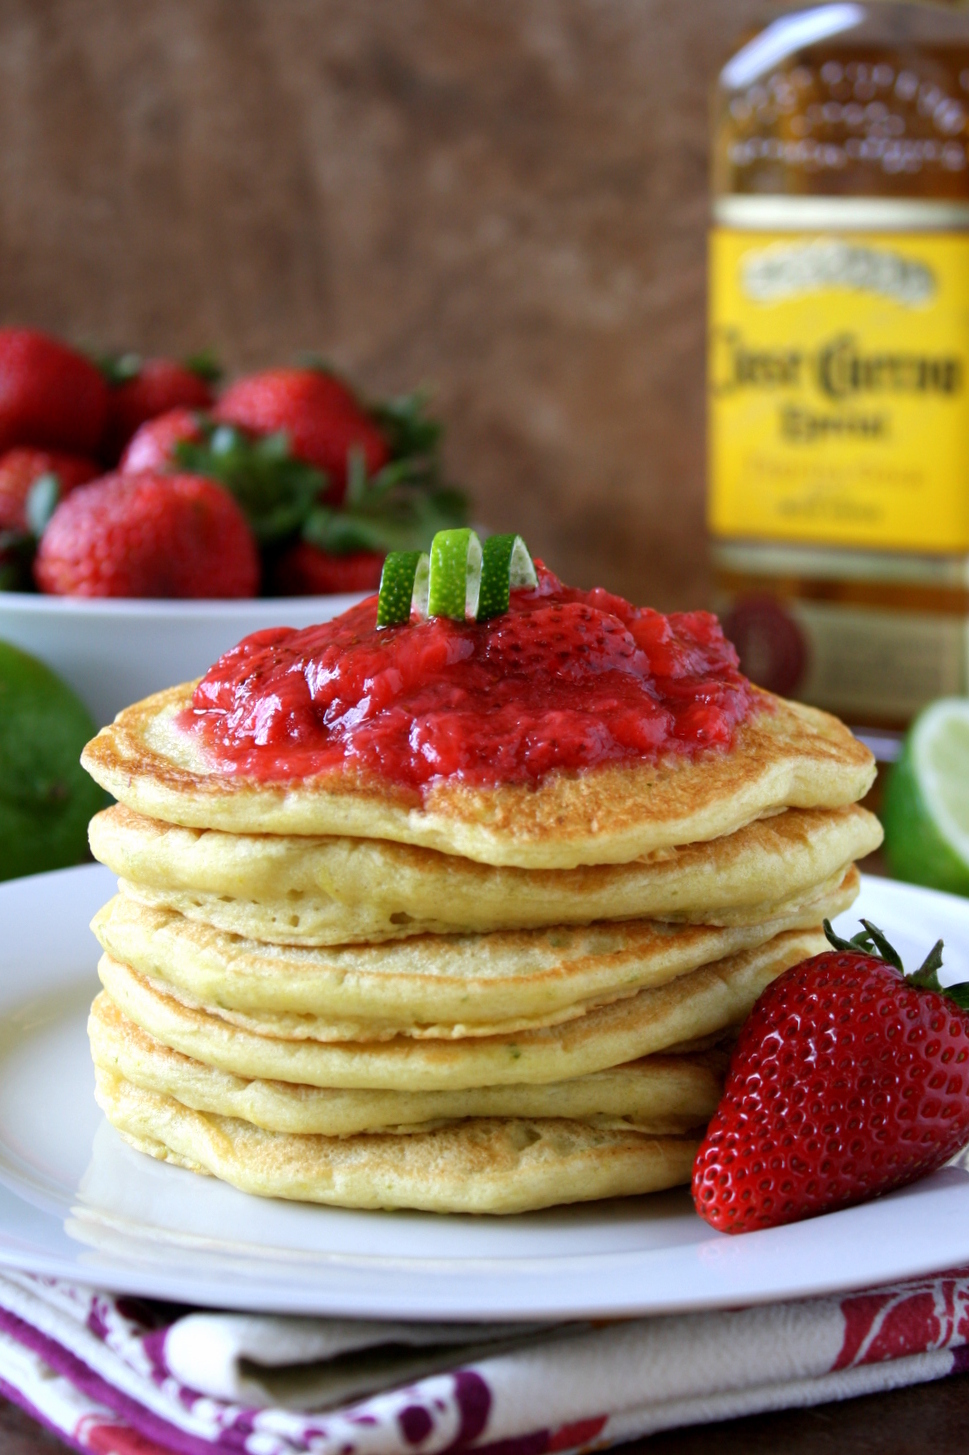 strawberry lime margarita pancakes